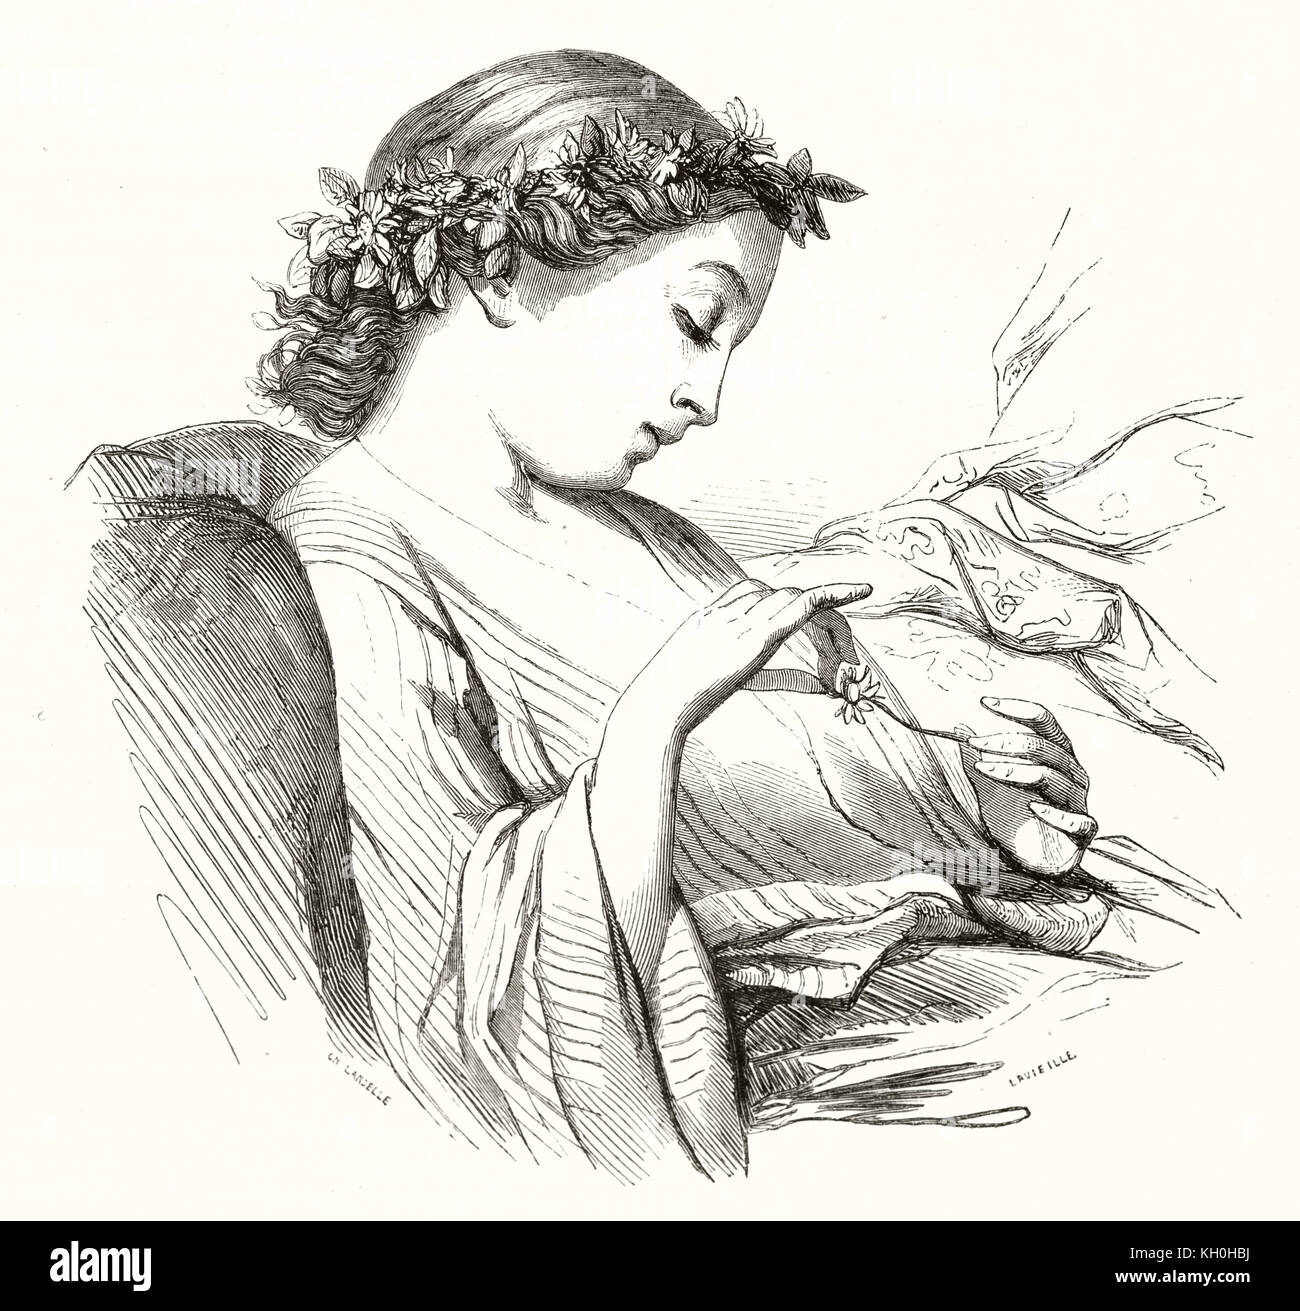 Riproduzione di un disegno da Landelle, intitolato "La Marguerite" (Daisy). Publ. su Magasin pittoresco, Parigi, 1847 Foto Stock